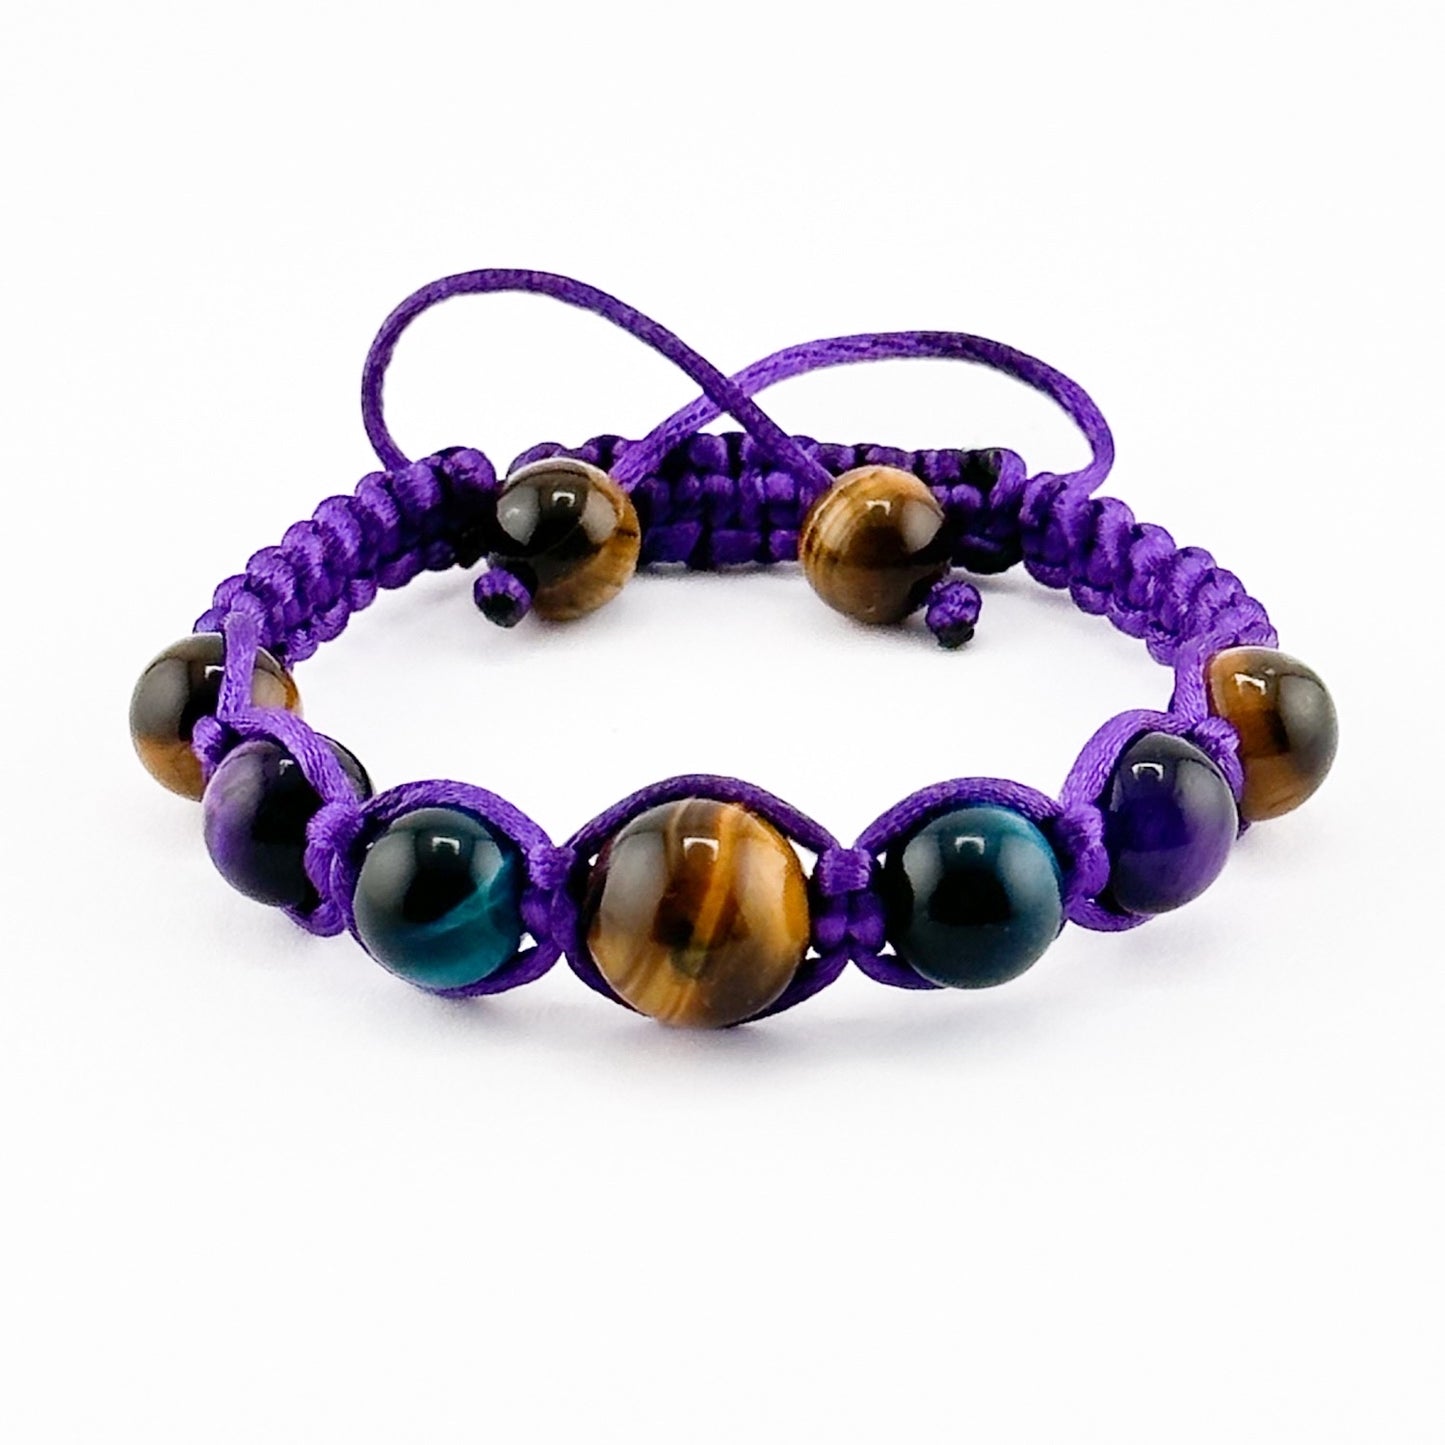 Tigers Eye Protection Bracelet | Adjustable Shamballa Macrame Braided Bracelet